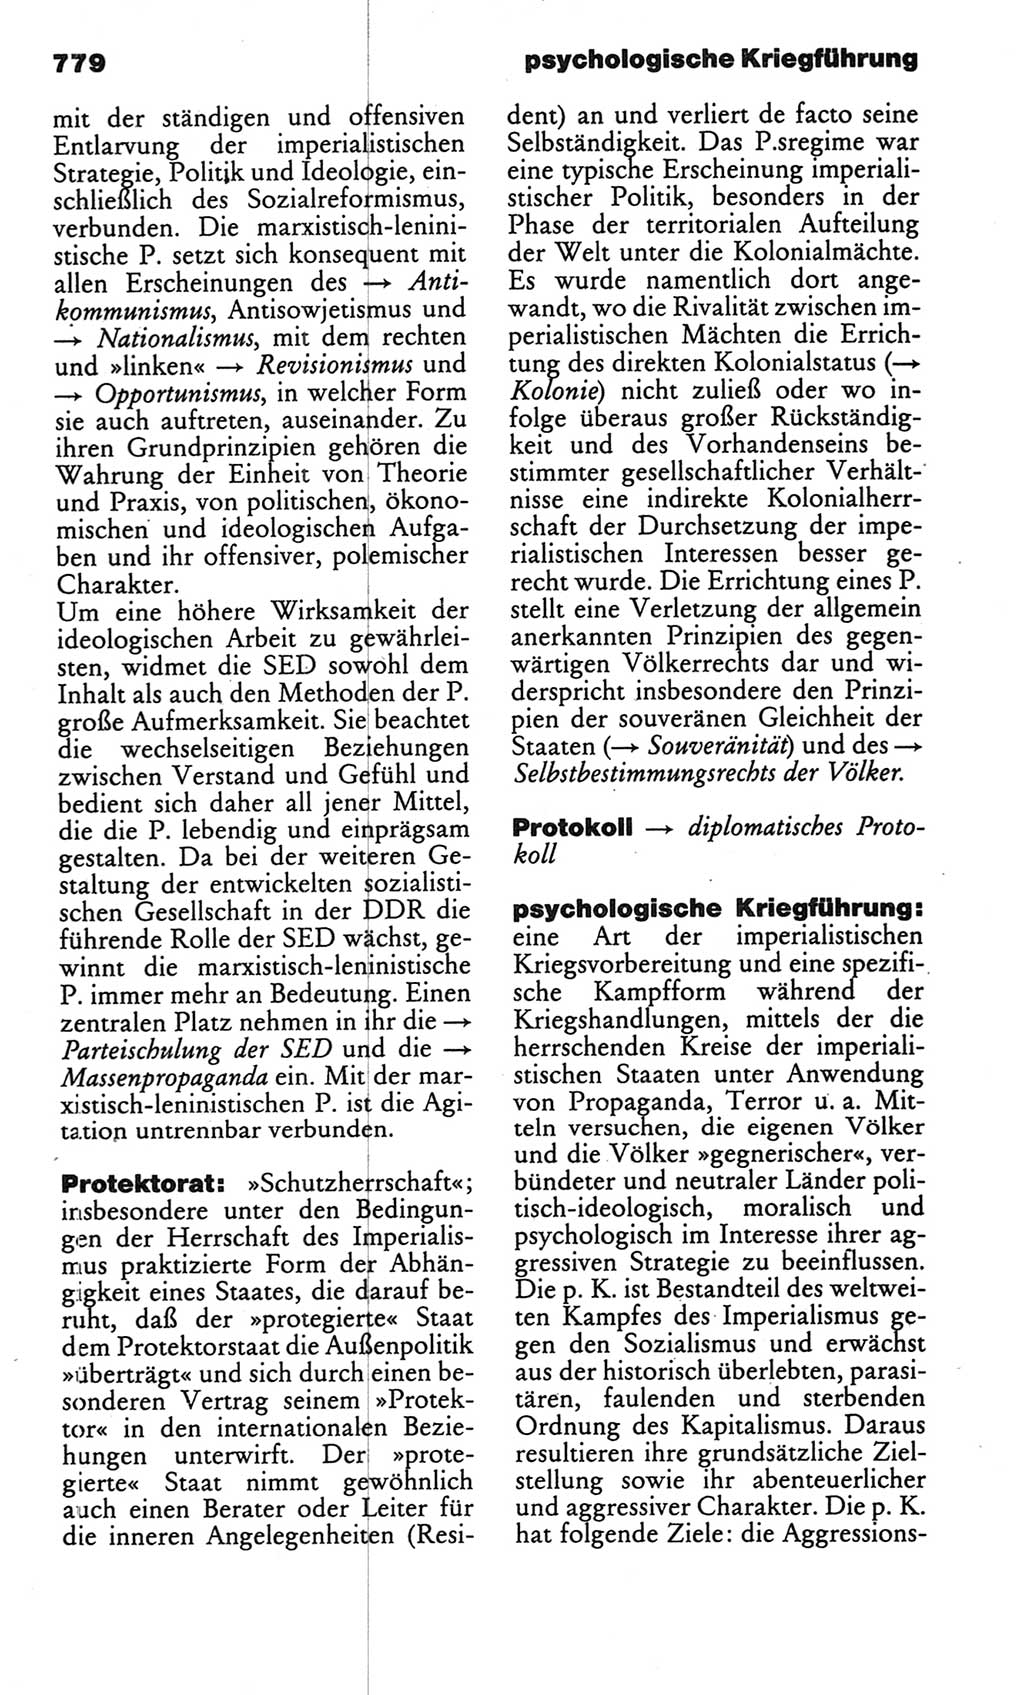 Kleines politisches Wörterbuch [Deutsche Demokratische Republik (DDR)] 1986, Seite 779 (Kl. pol. Wb. DDR 1986, S. 779)